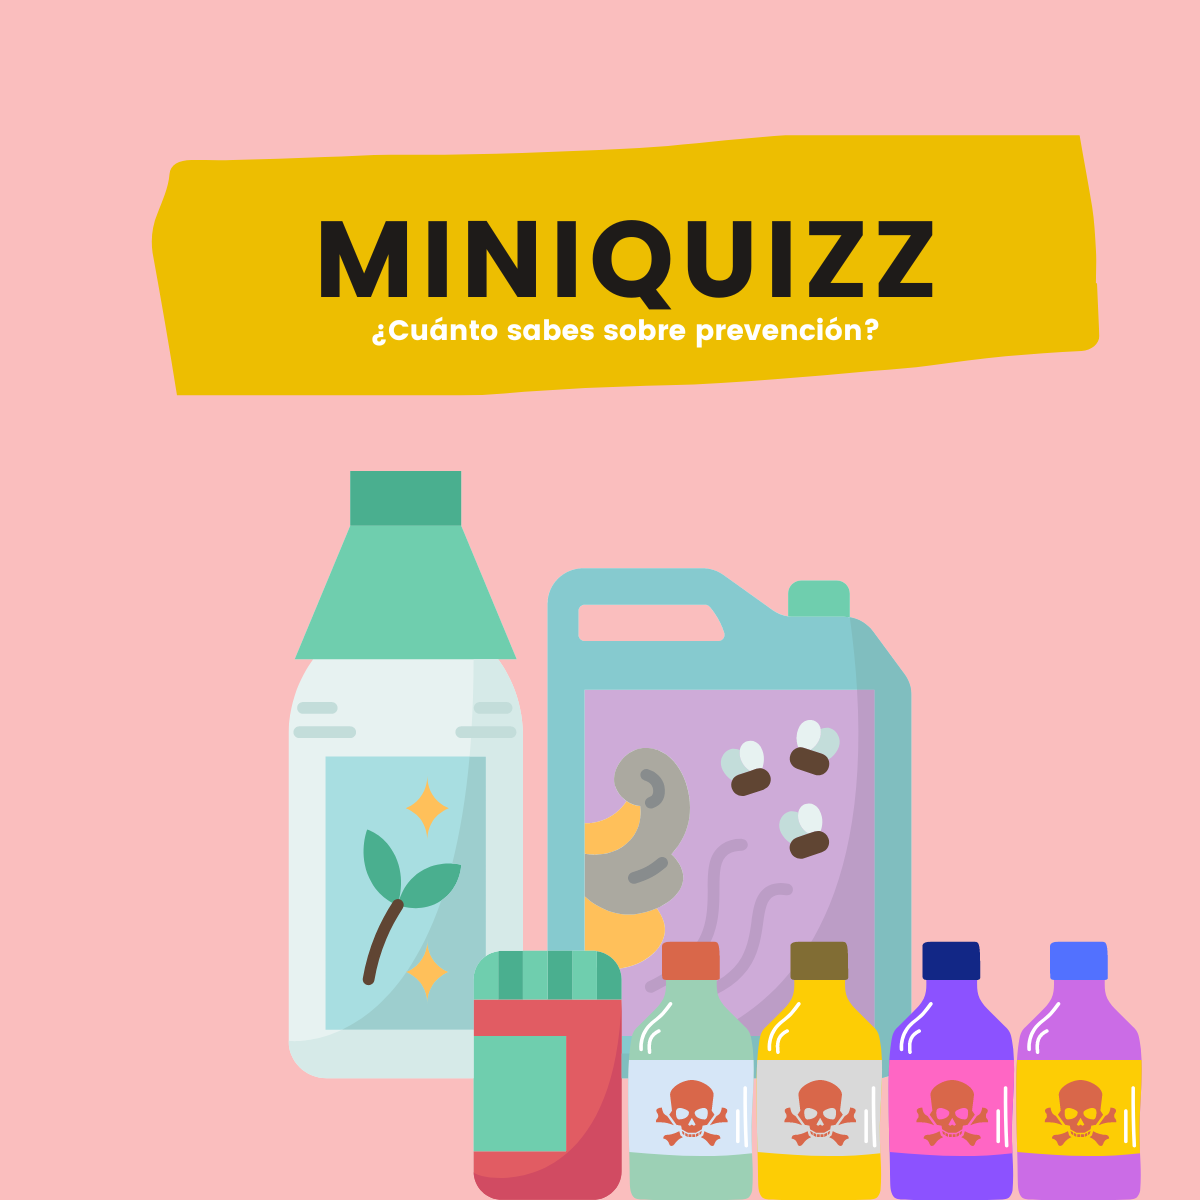 Miniquizz: Químicos